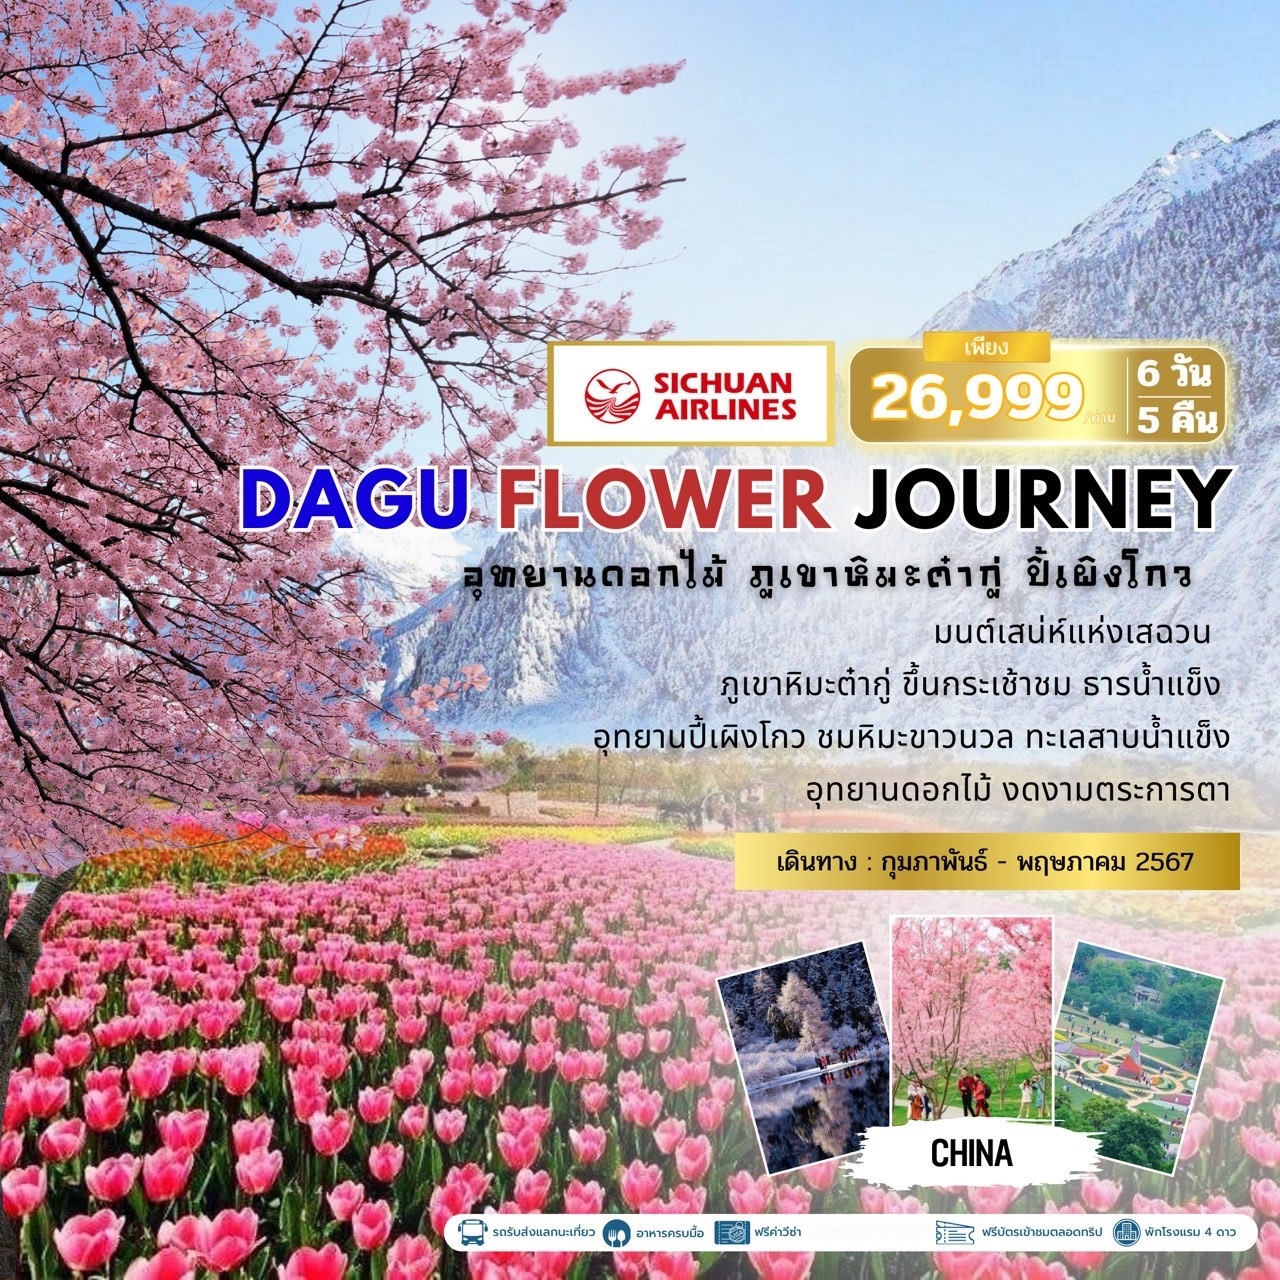 ทัวร์จีน DAGU FLOWER JOURNEY อุทยานดอกไม้ ภูเขาหิมะต๋ากู่ ปี้เผิงโกว 6วัน 5คืน (3U)